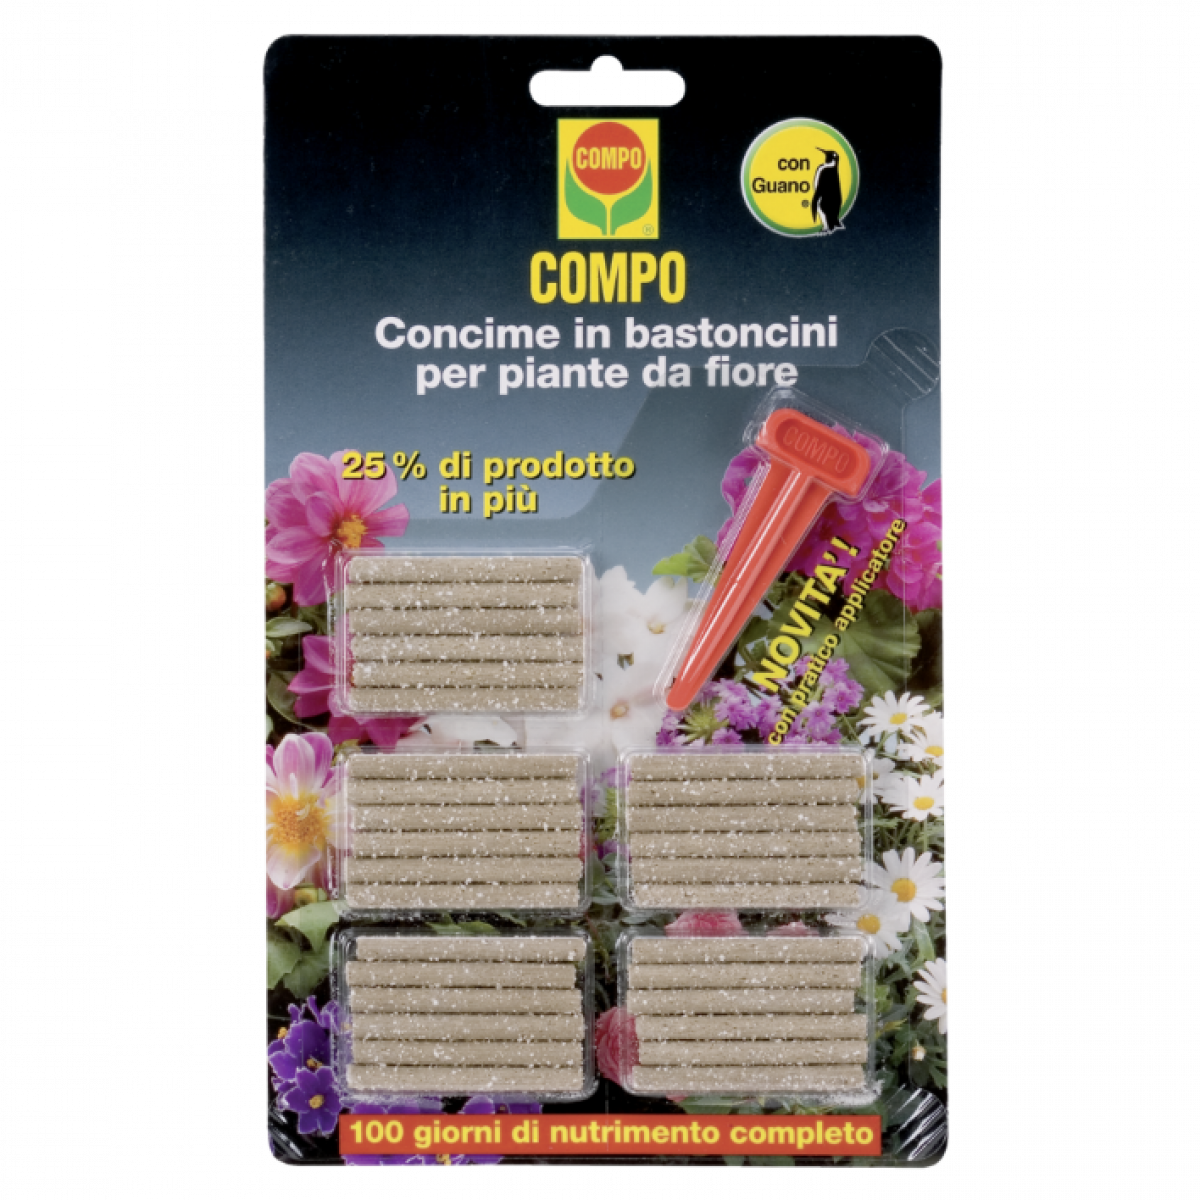 Concime in bastoncini per piante da fiore Compo - 27 g 30 bastoncini 